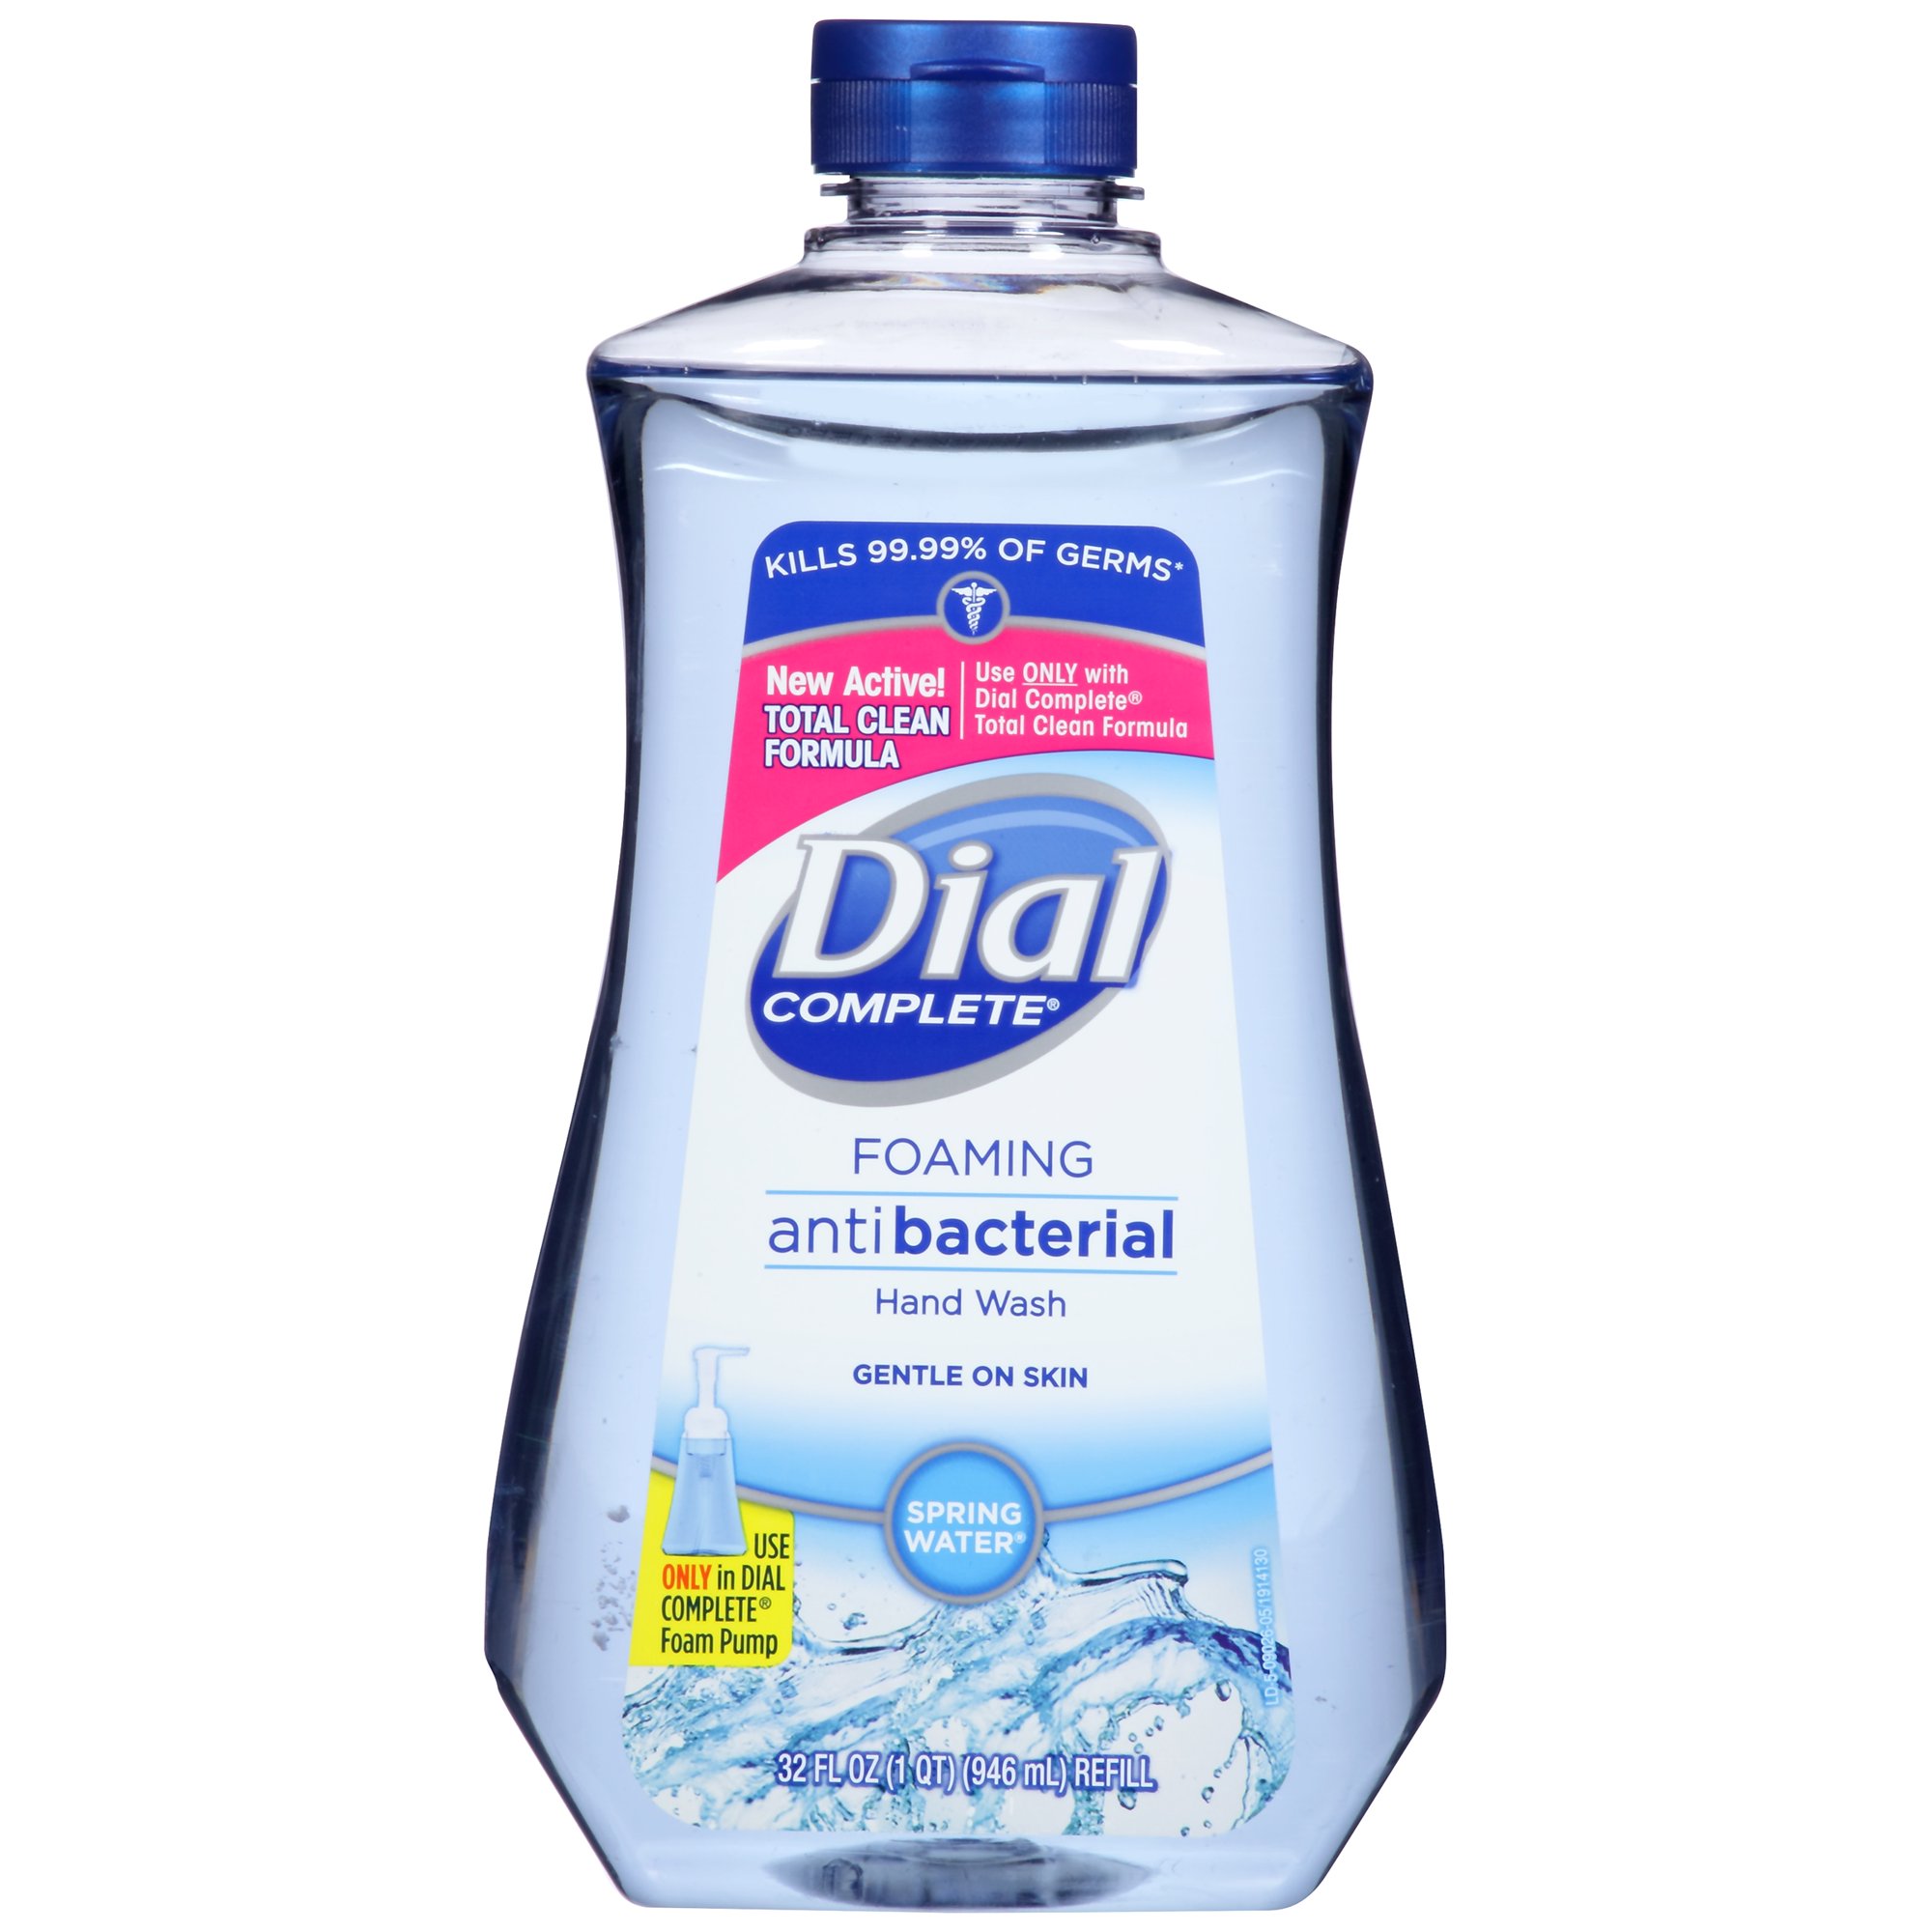 抗菌泡沫洗手液补充装
Dial Complete Antibacterial Foaming Hand Wash Refill, Spring Water, 32 Ounce